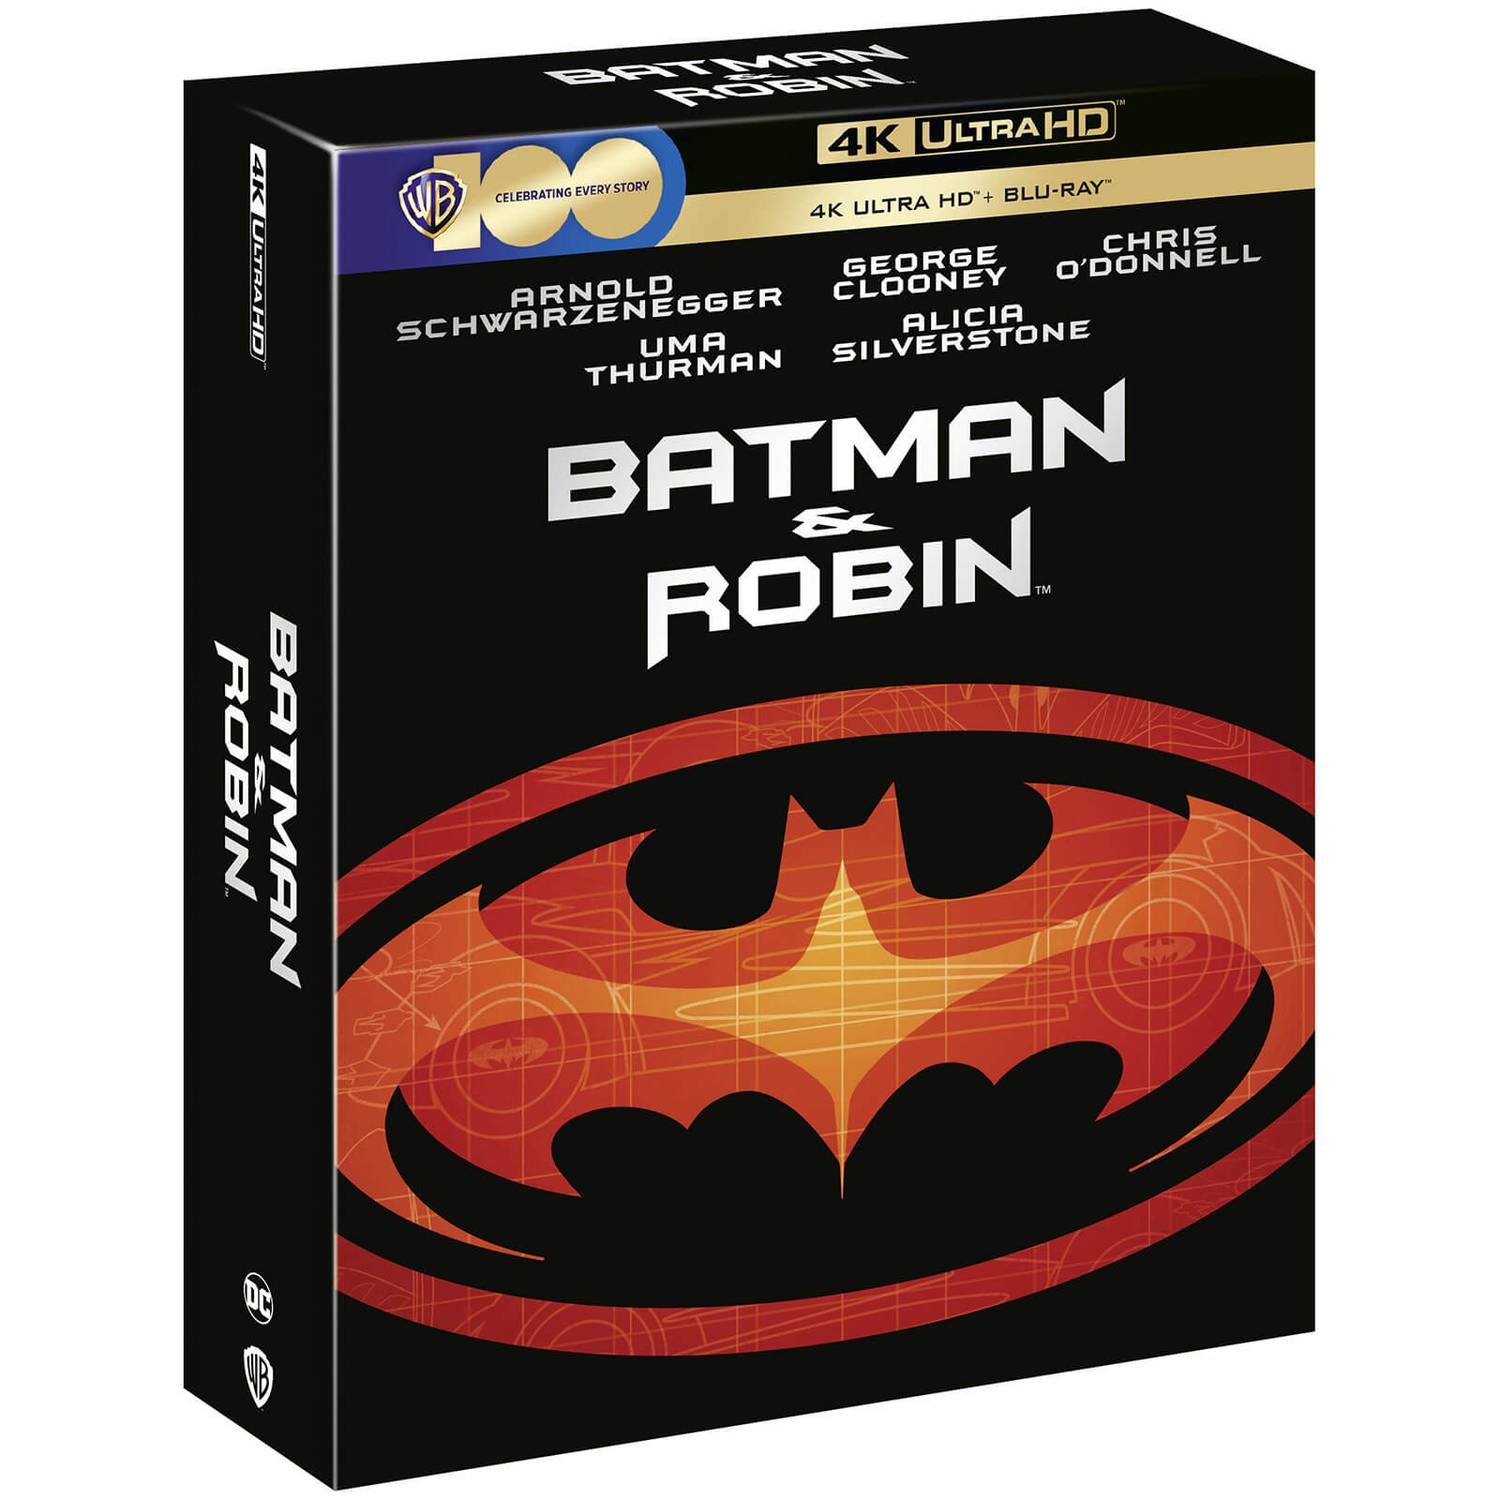 Бэтмен и Робин (4K UHD + Blu-ray) Ultimate Collector's Edition Steelbook